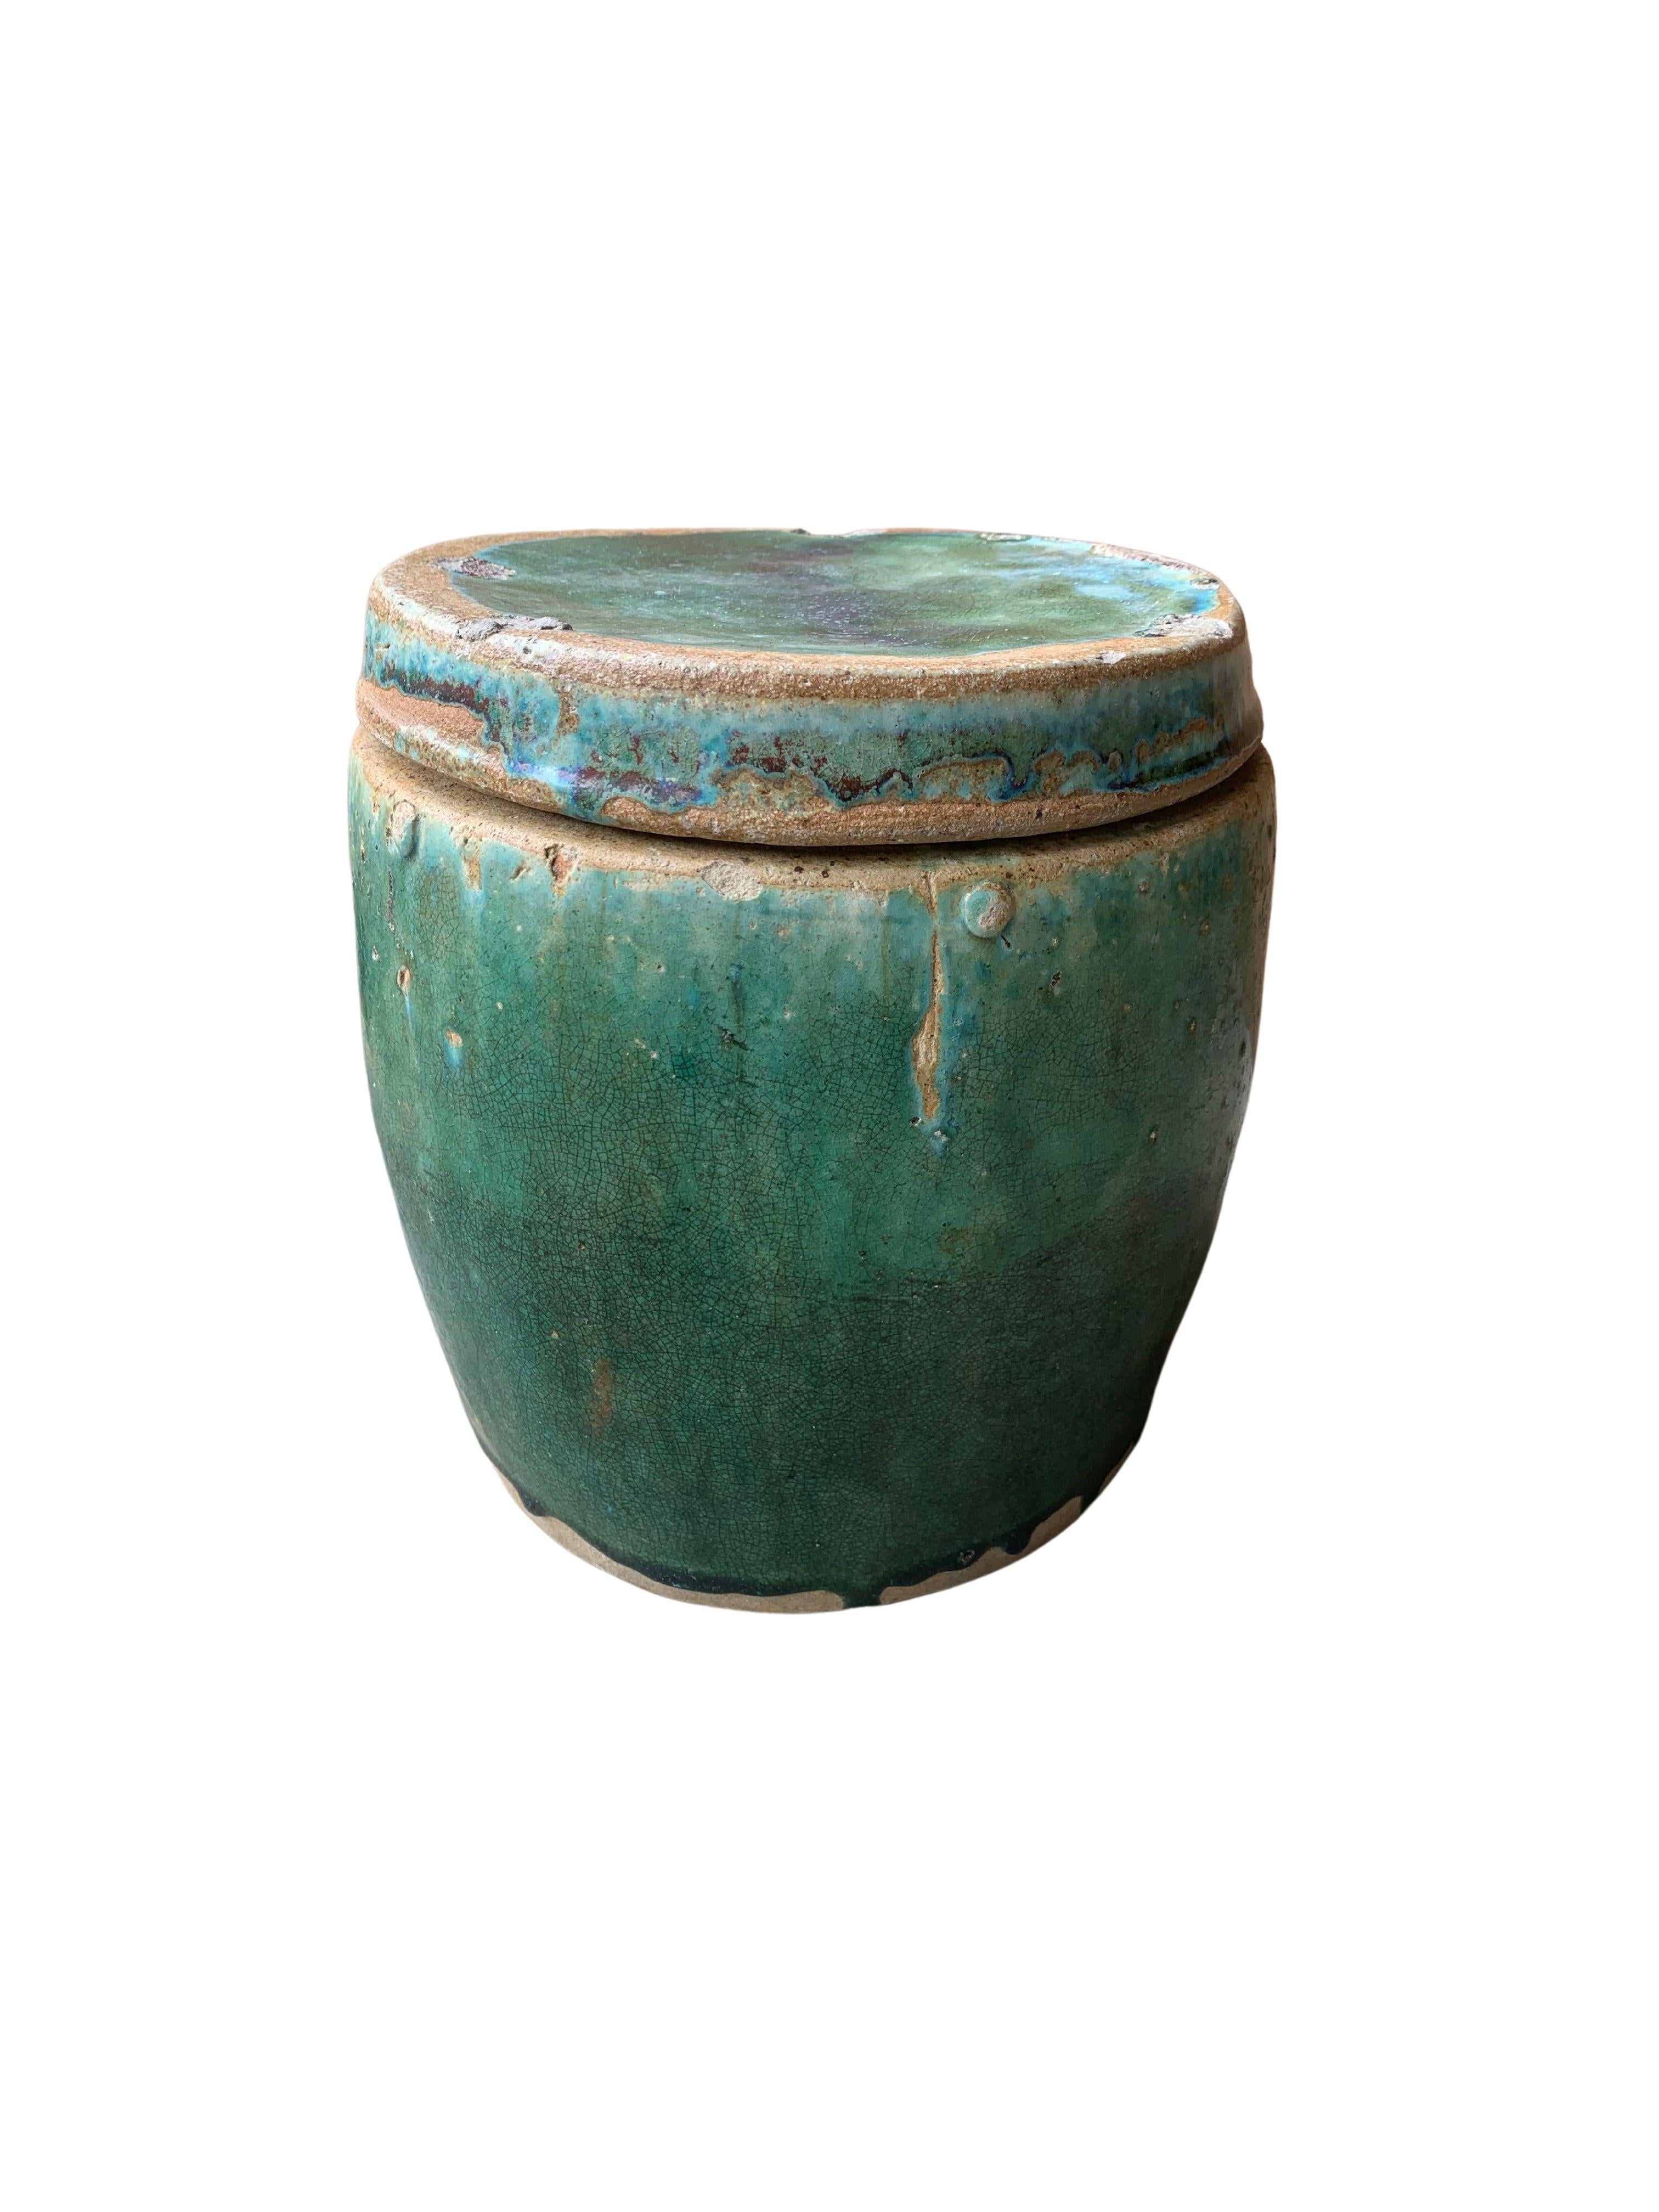 Une merveilleuse glaçure verte typique de la poterie chinoise 